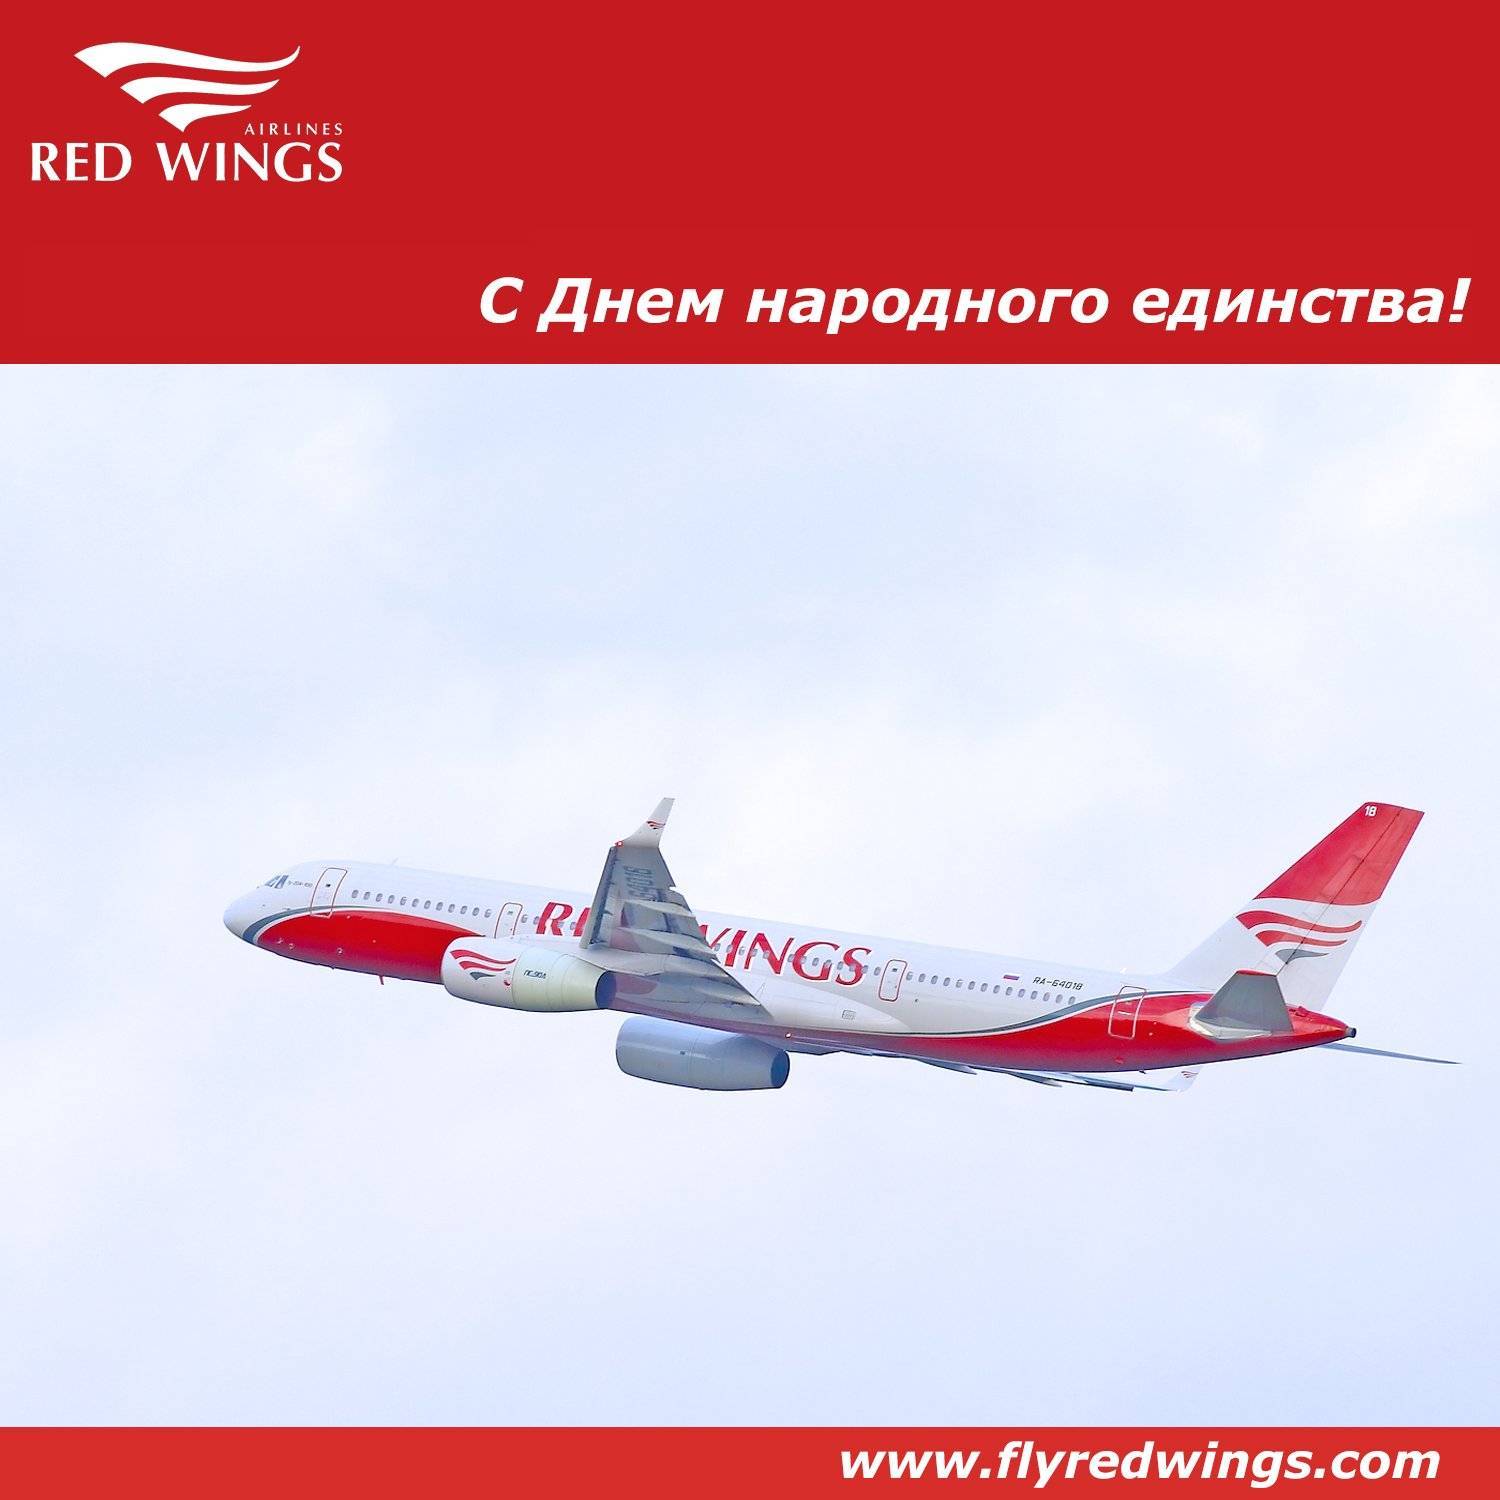 Ред вингс: официальный сайт авиакомпании, авиапарк, услуги